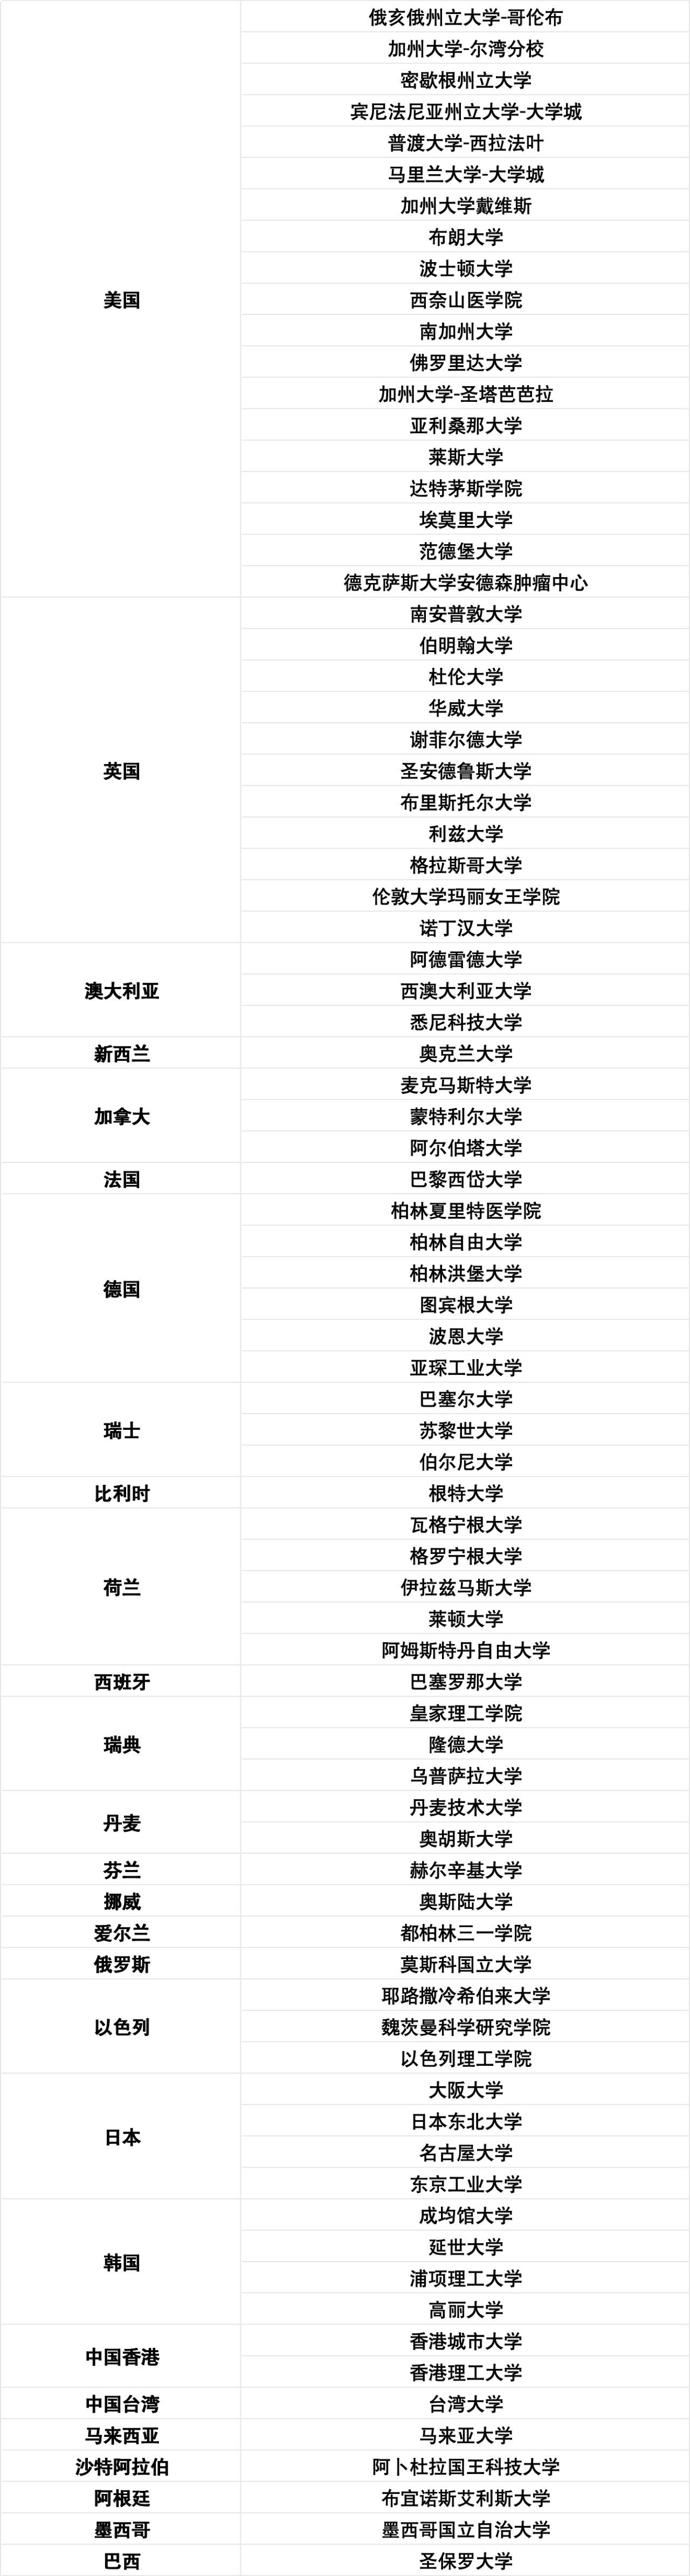 留学红利来啦~！上海留学生落户院校TOP前百名单更新！